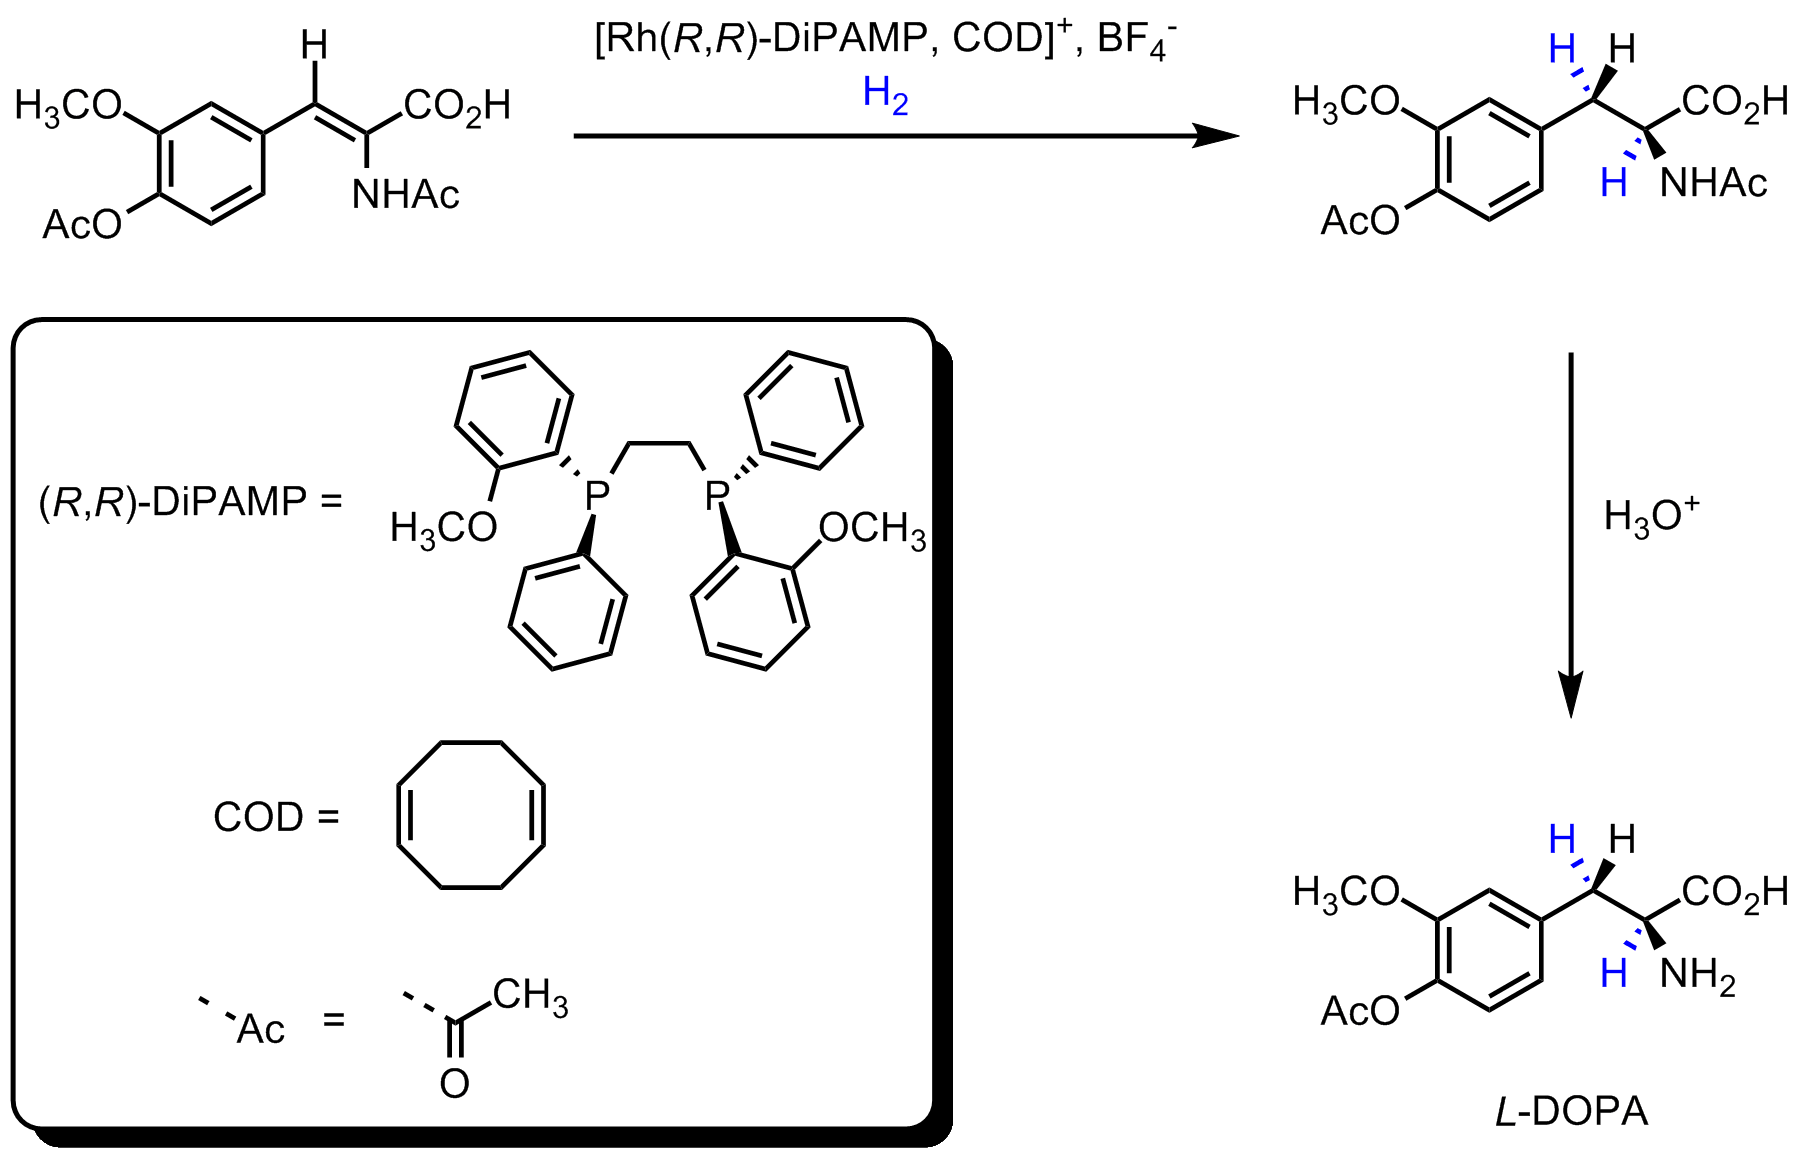 Asymmetric L-DOPA synthesis